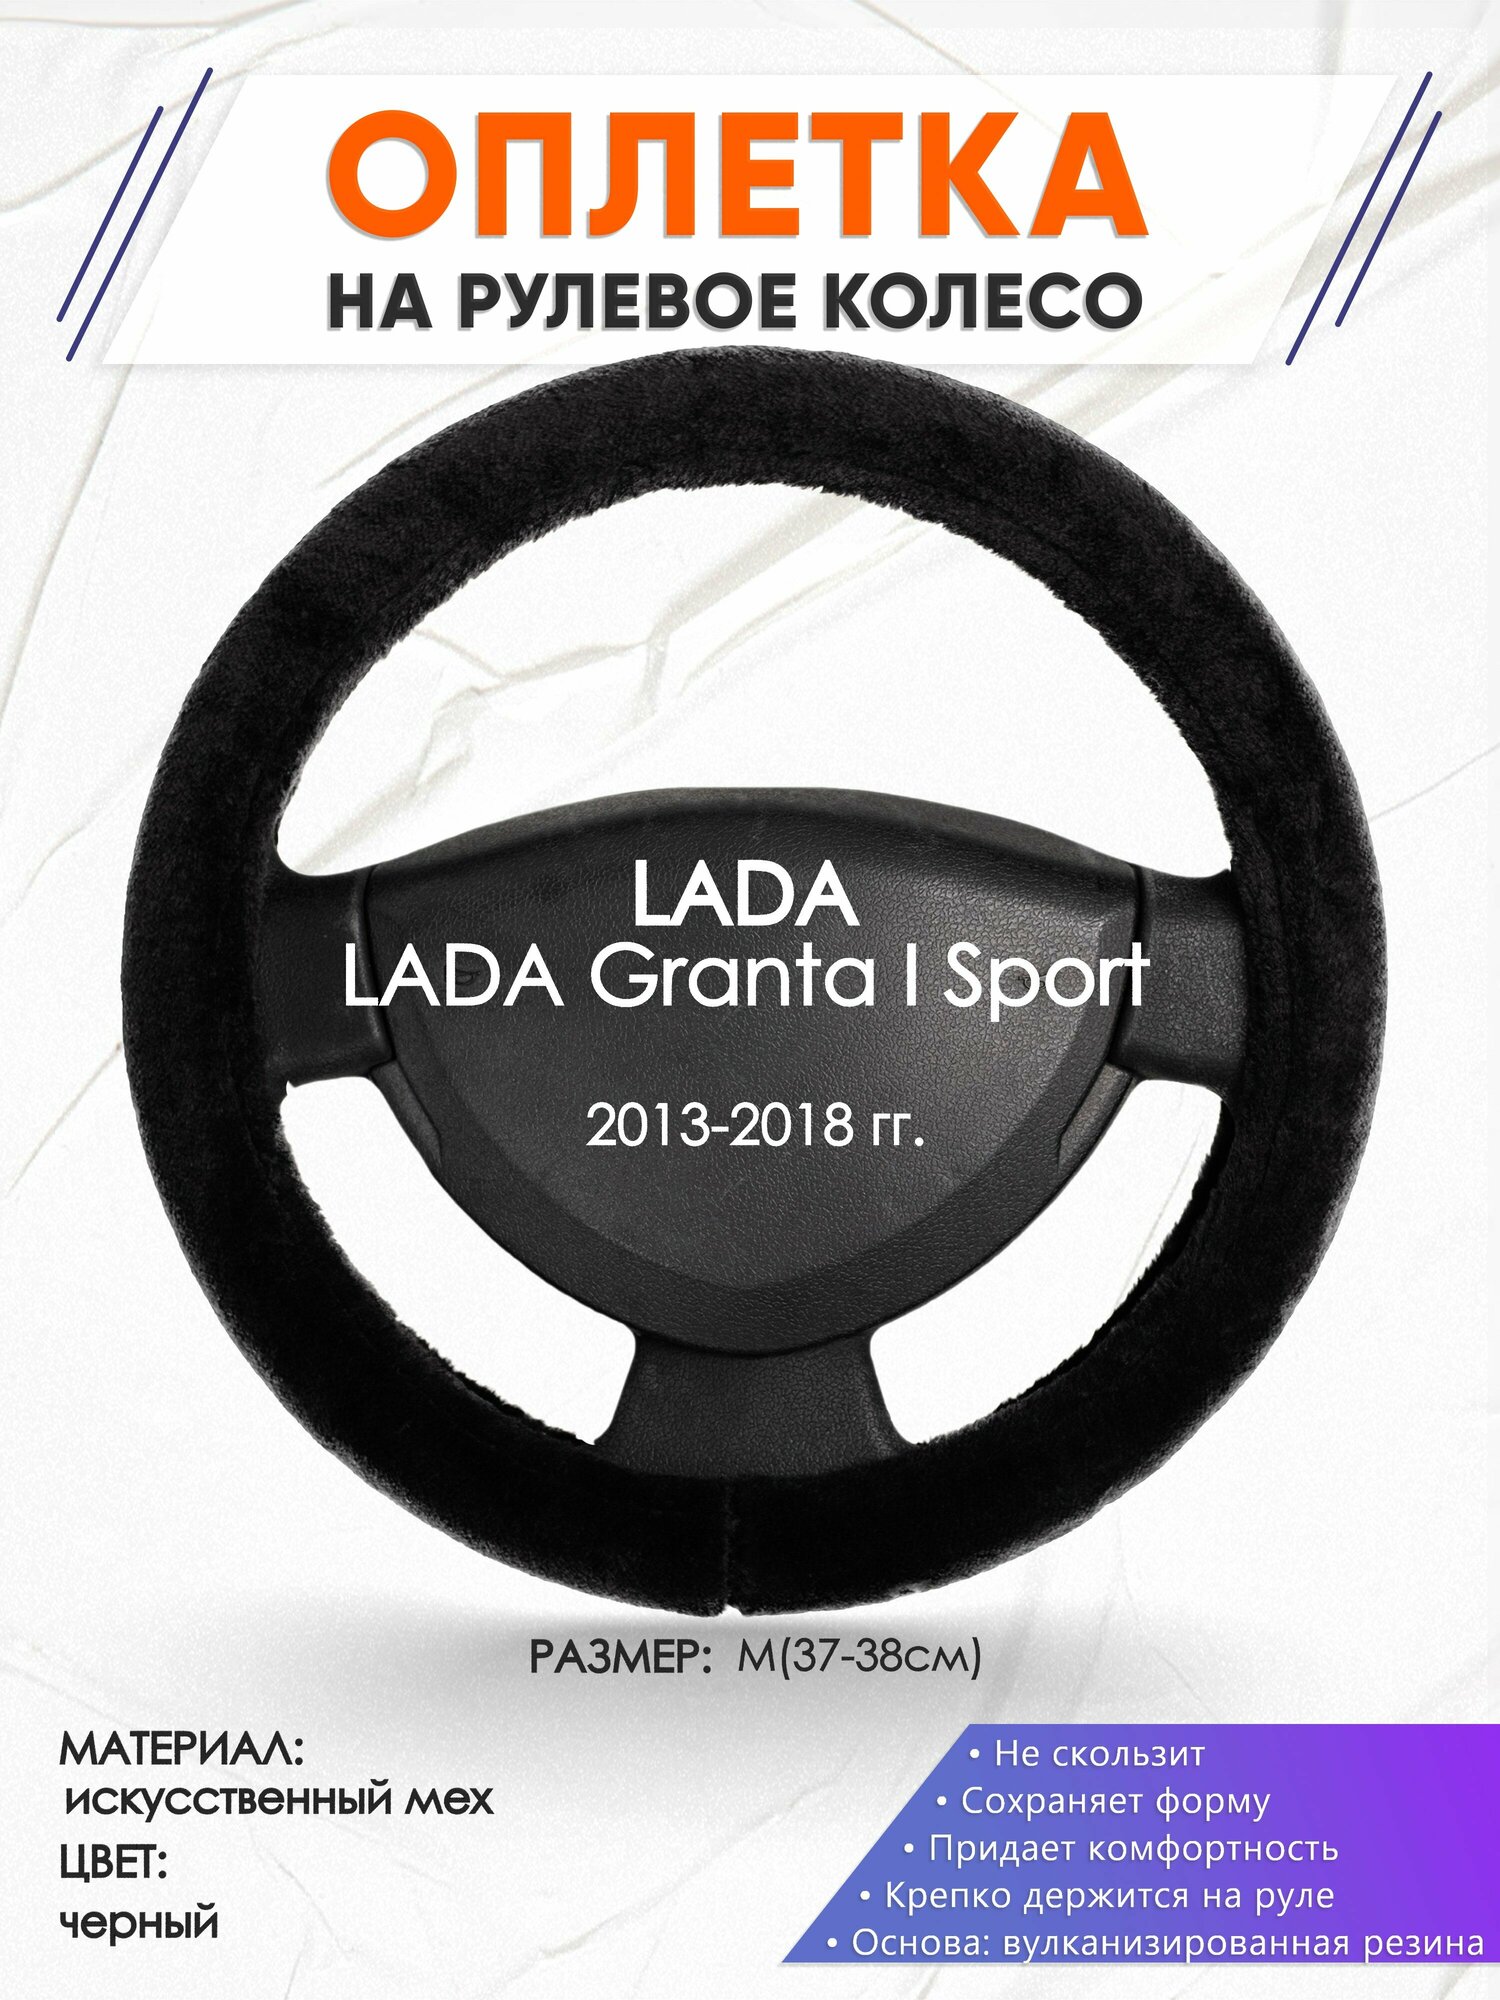 Оплетка наруль для LADA Granta I Sport(Лада Гранта спорт) 2013-2018 годов выпуска, размер M(37-38см), Искусственный мех 45